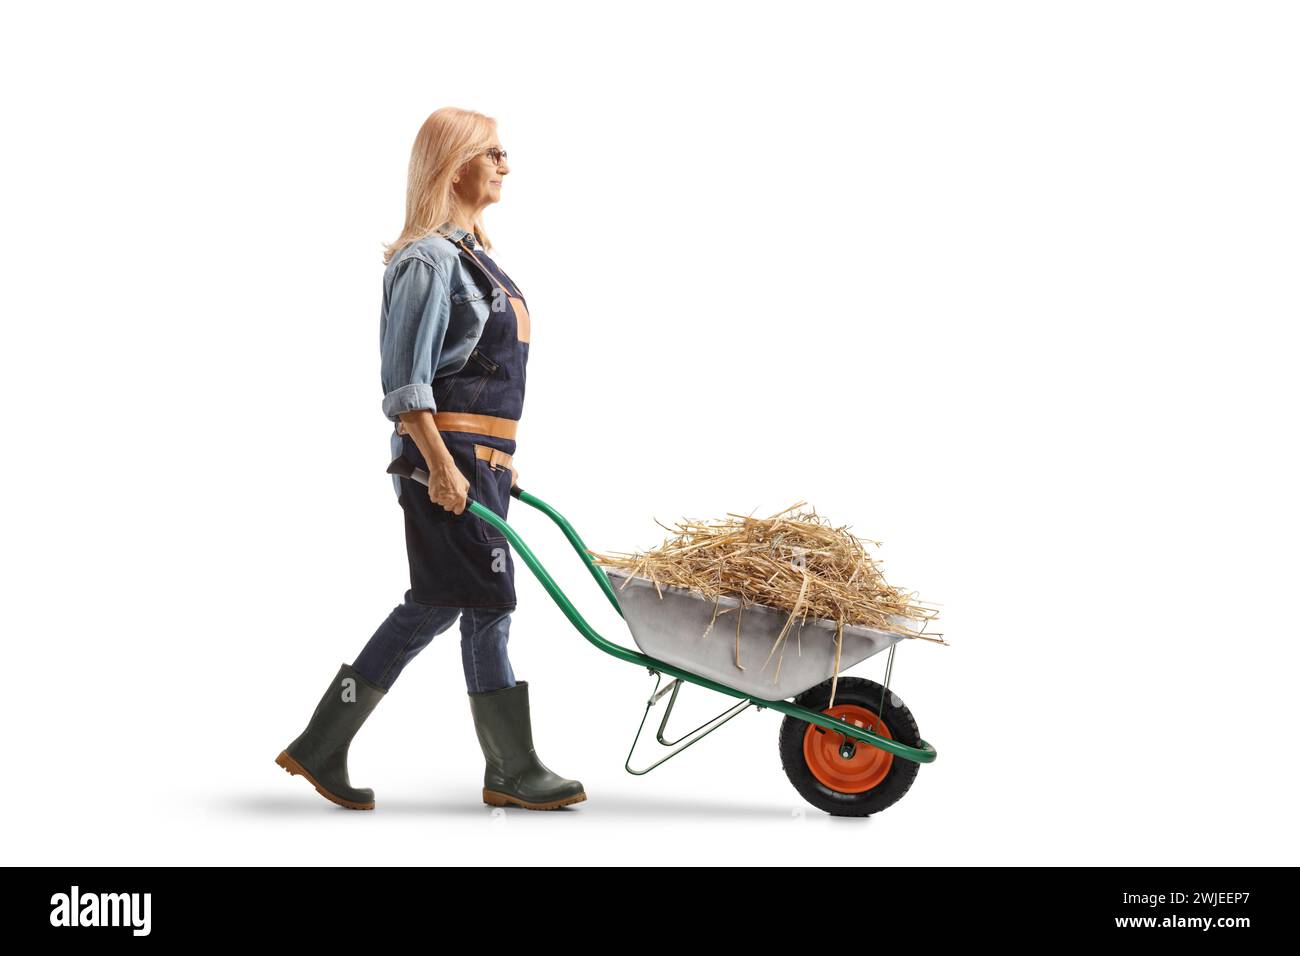 Immagine di un'agricoltrice che cammina con il fieno in una carriola isolata su sfondo bianco Foto Stock